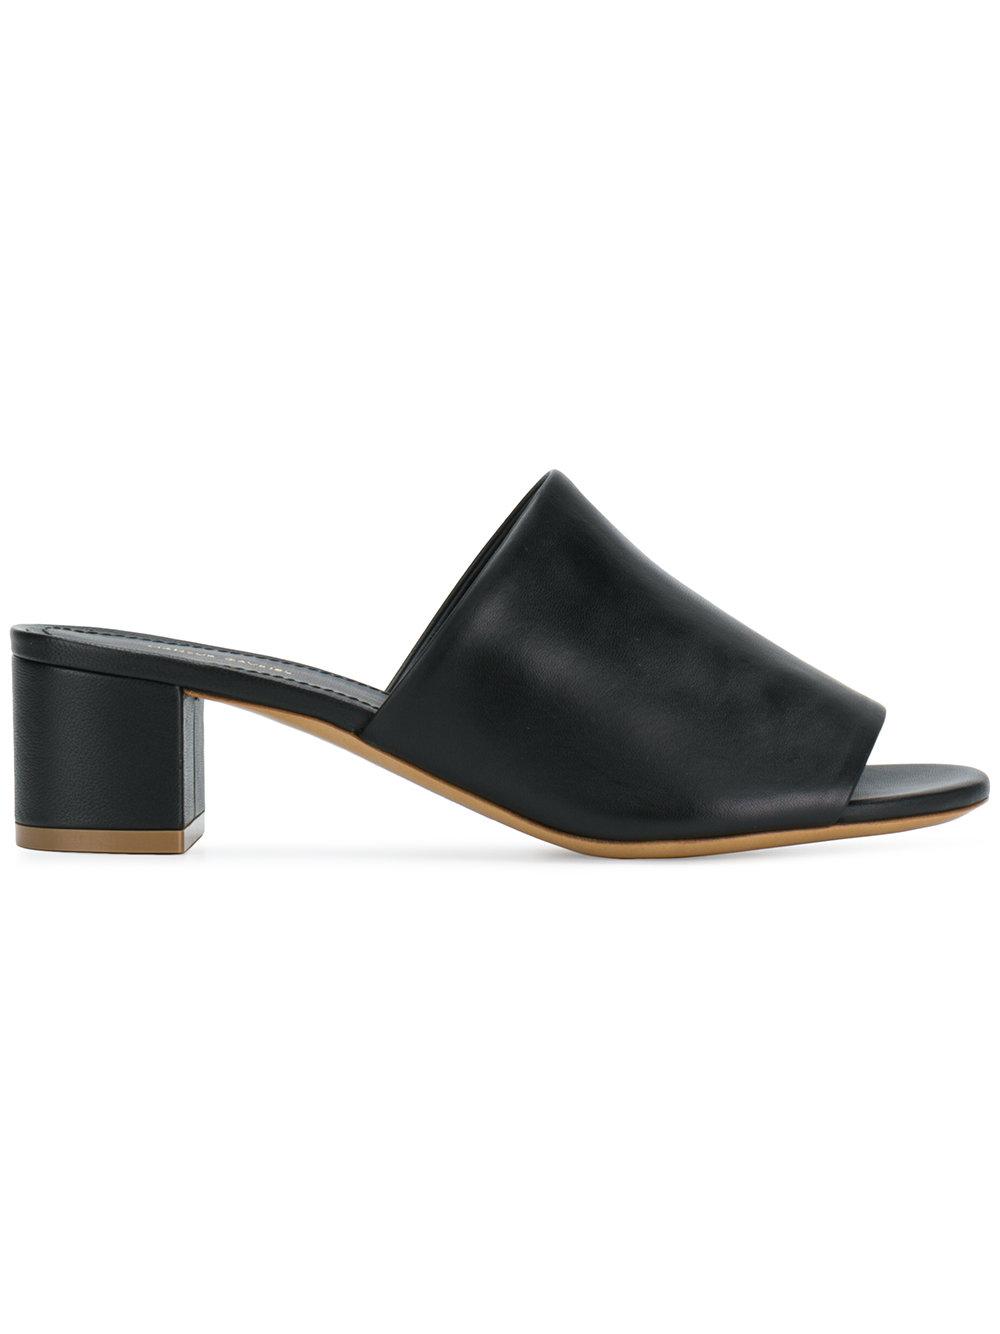 elegant low heel sandals